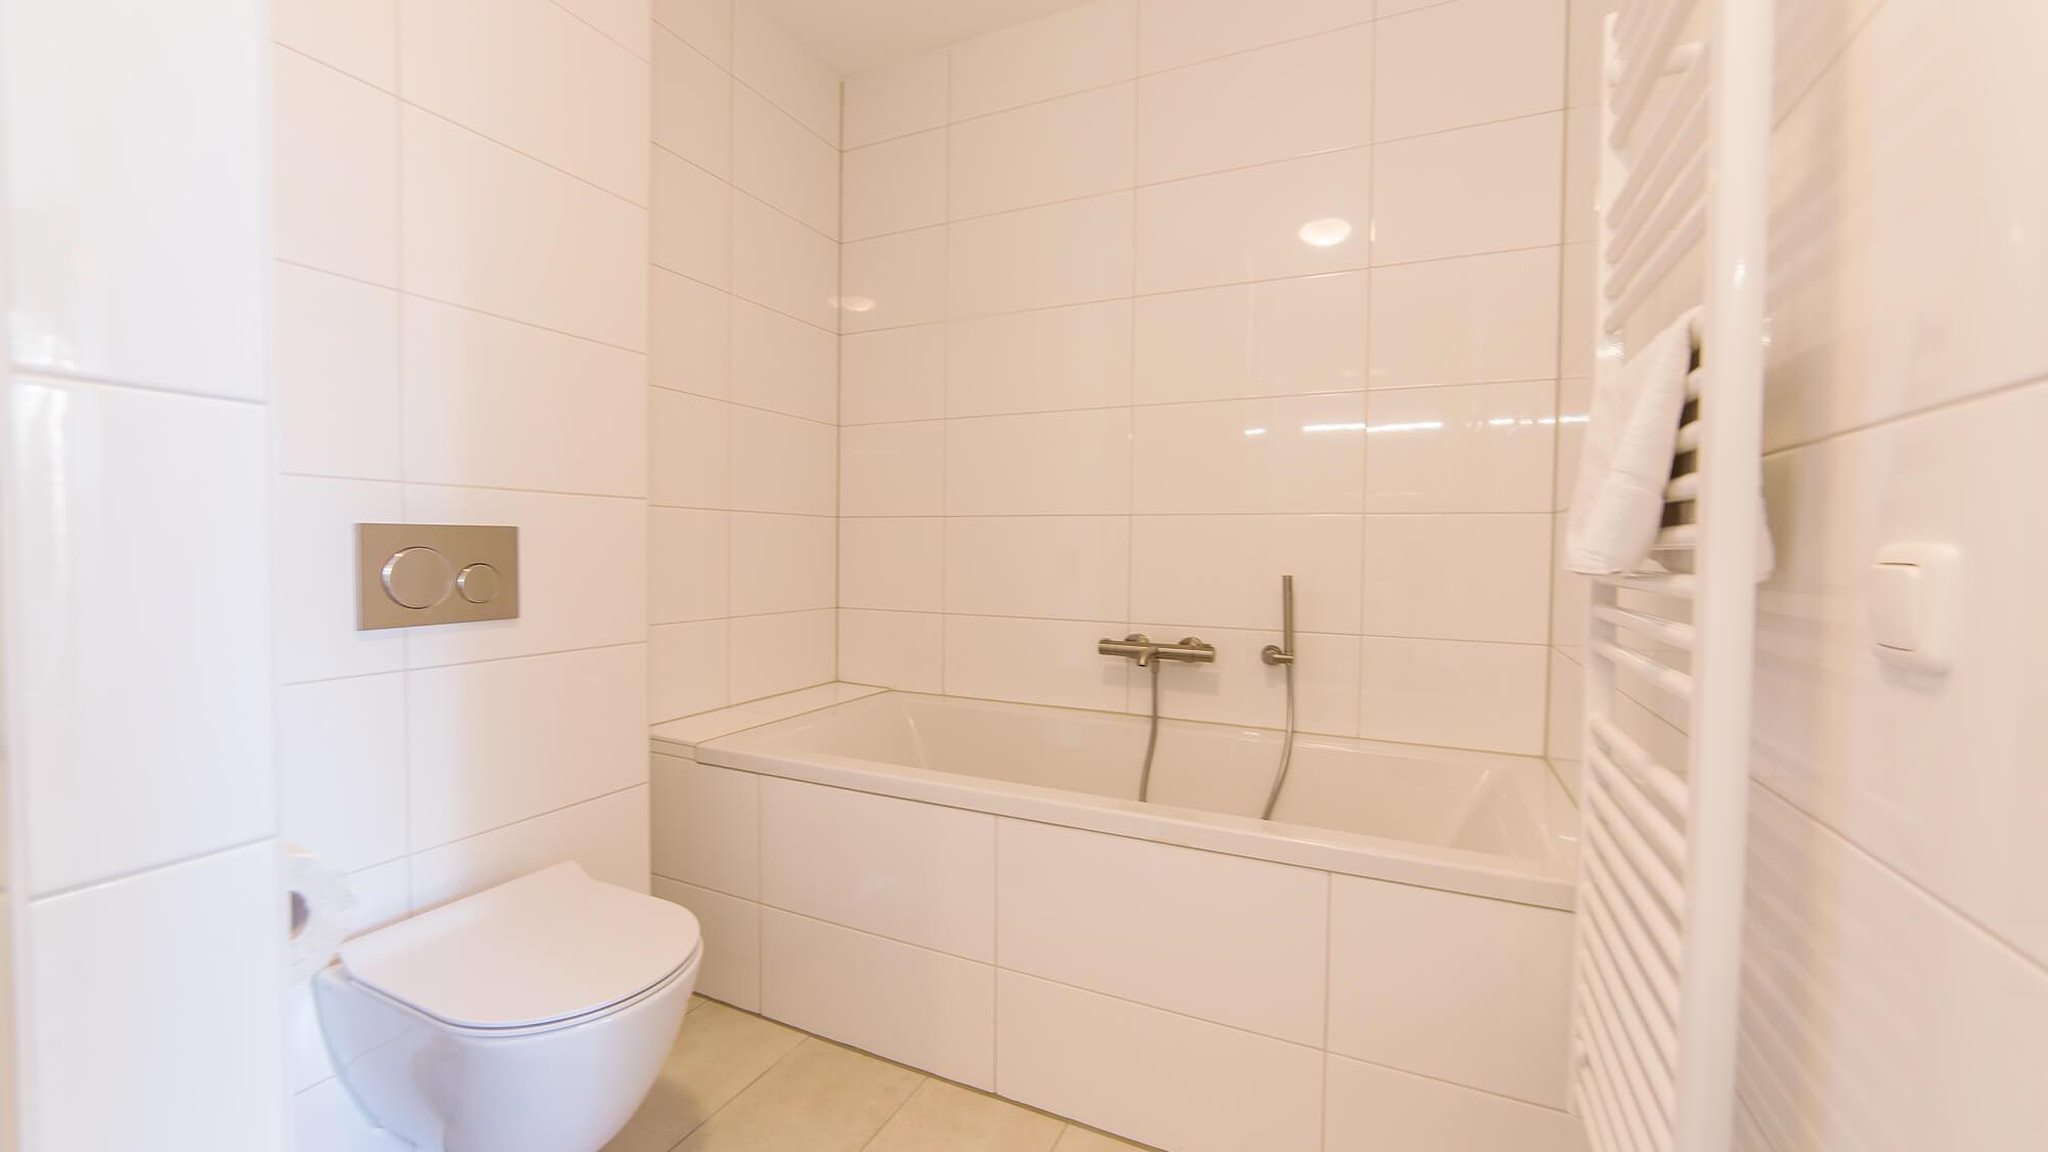 Hertogenvilla wellness waterfront - 3 bedrooms / 3 bathrooms